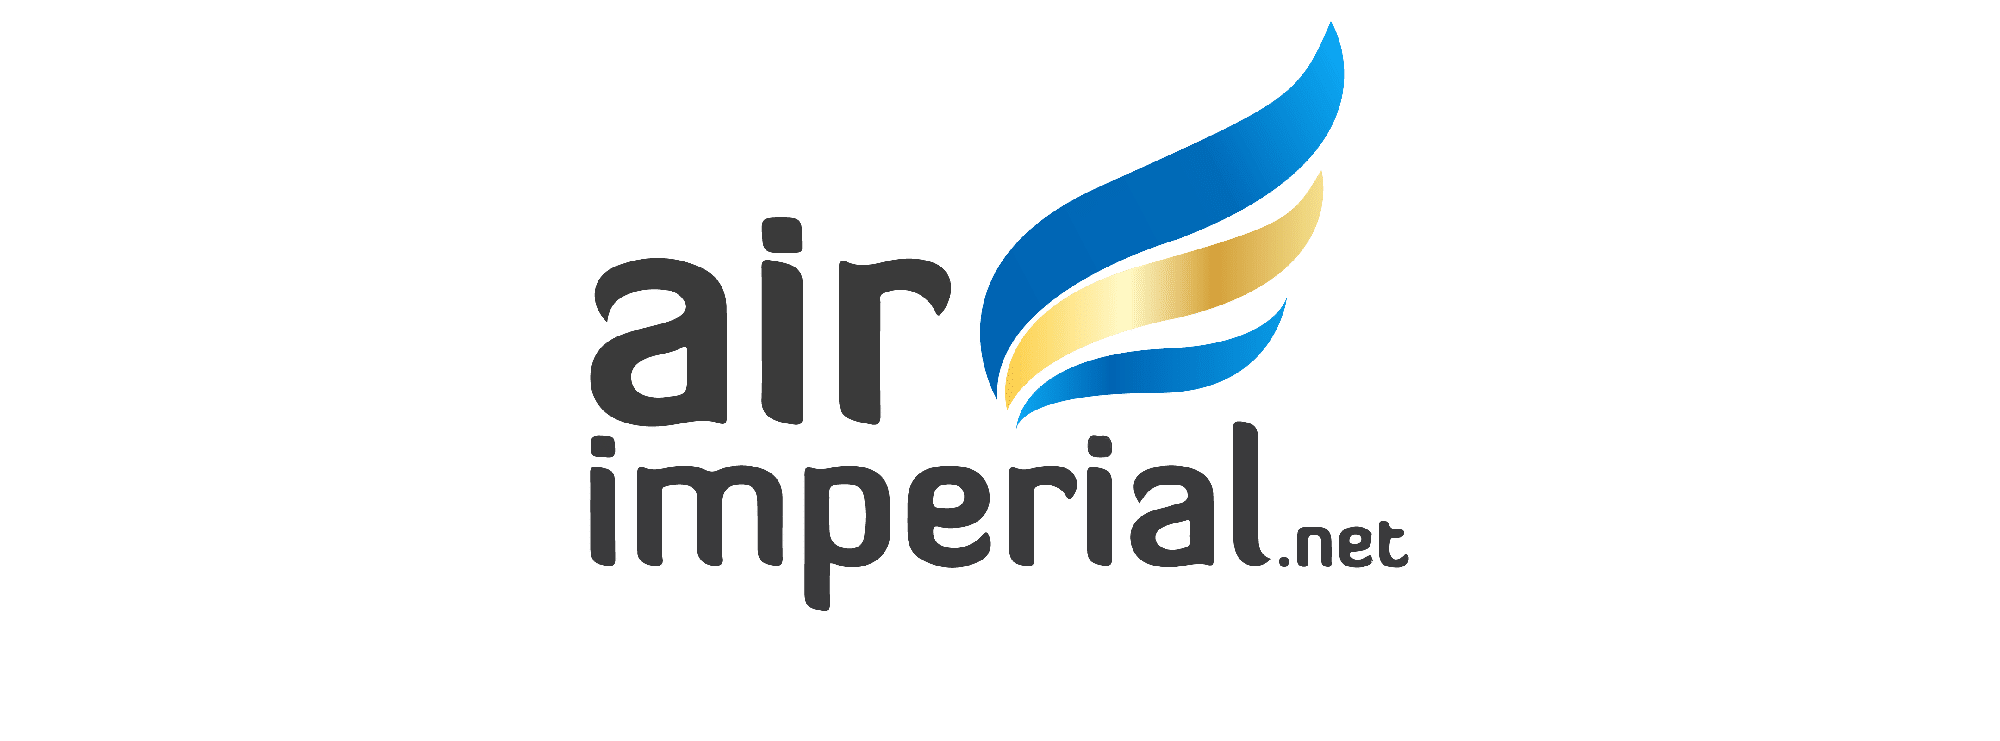 air imperial